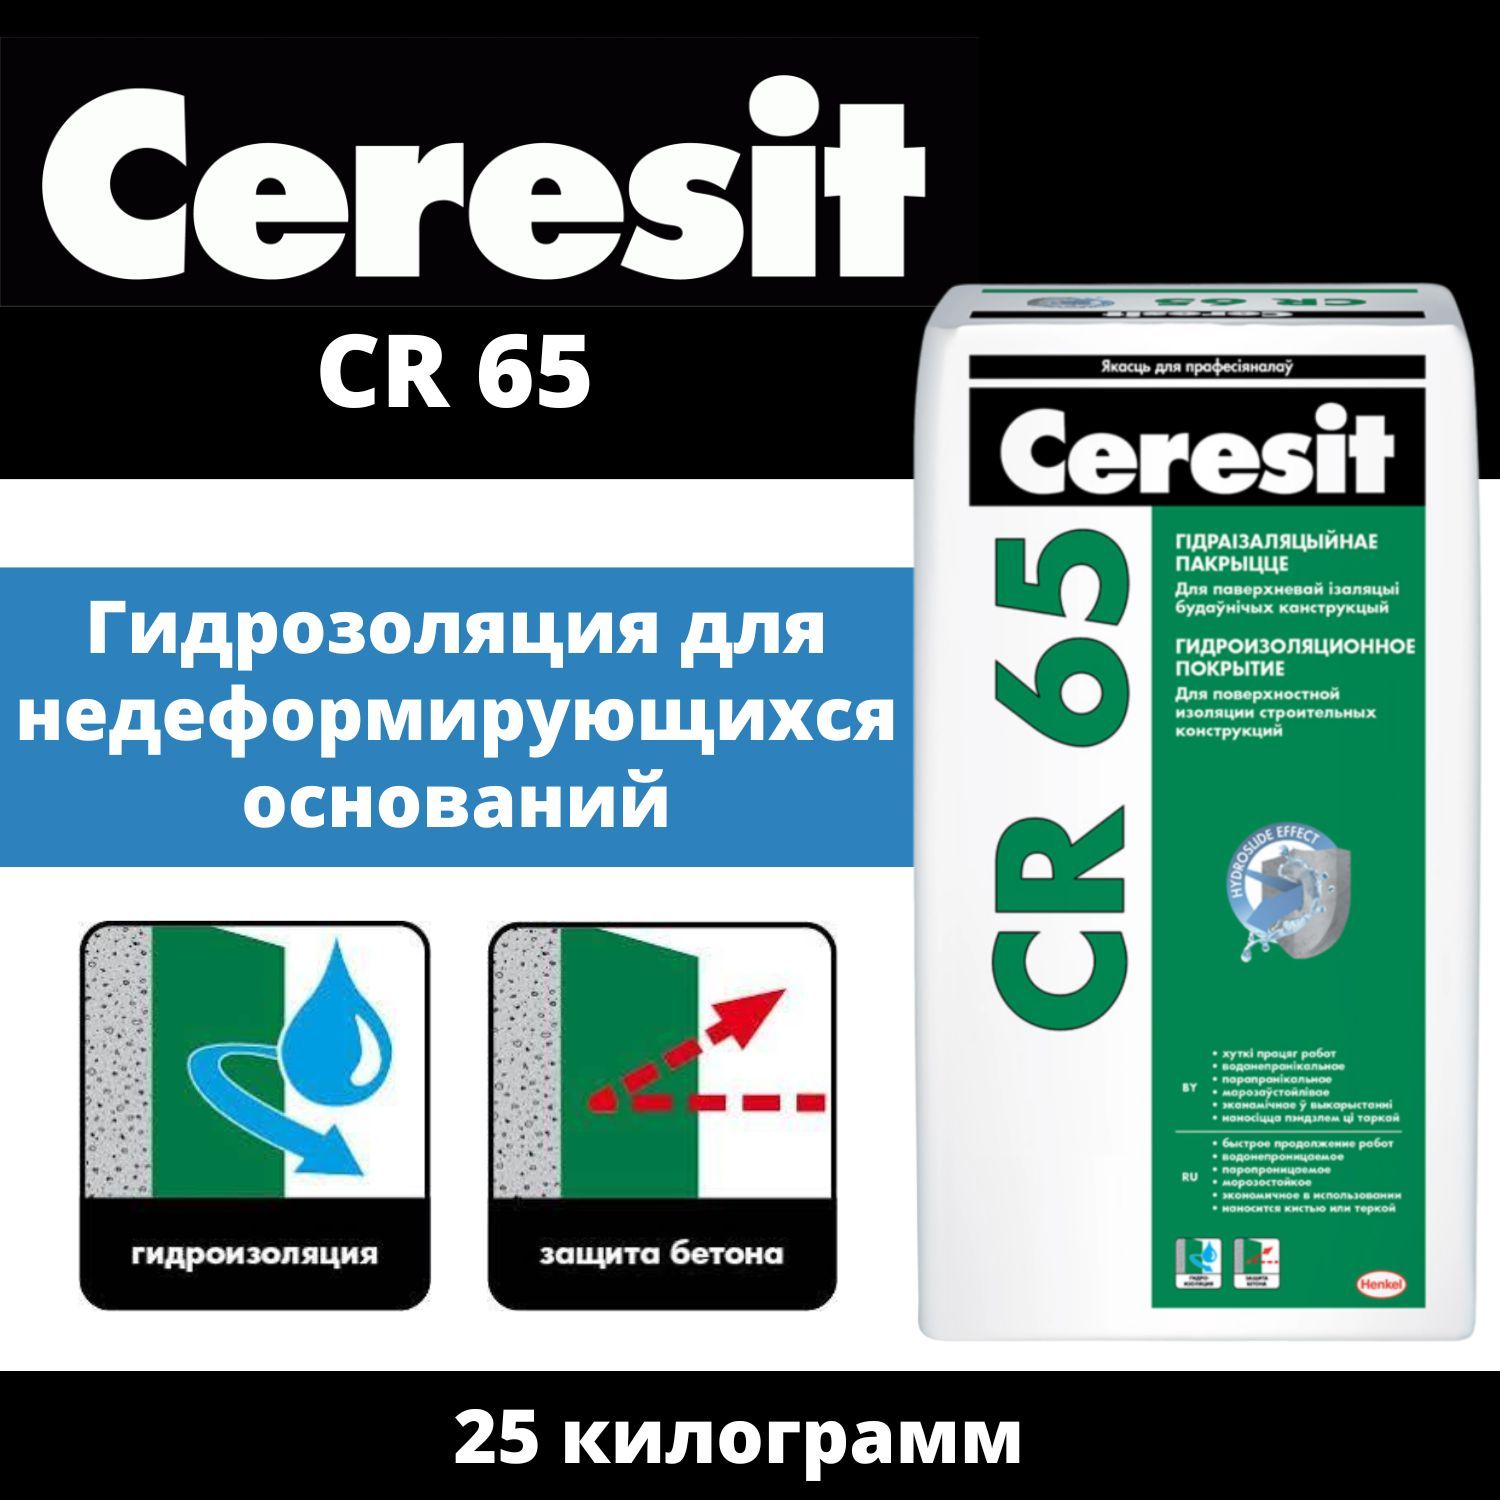 Гидроизоляция церезит cr 65. Церезит CR 65. Церезит 65 гидроизоляция. Терраса Ceresit CR 65. Гидроизоляция обмазочная цементная Ceresit CR 65 20 кг.